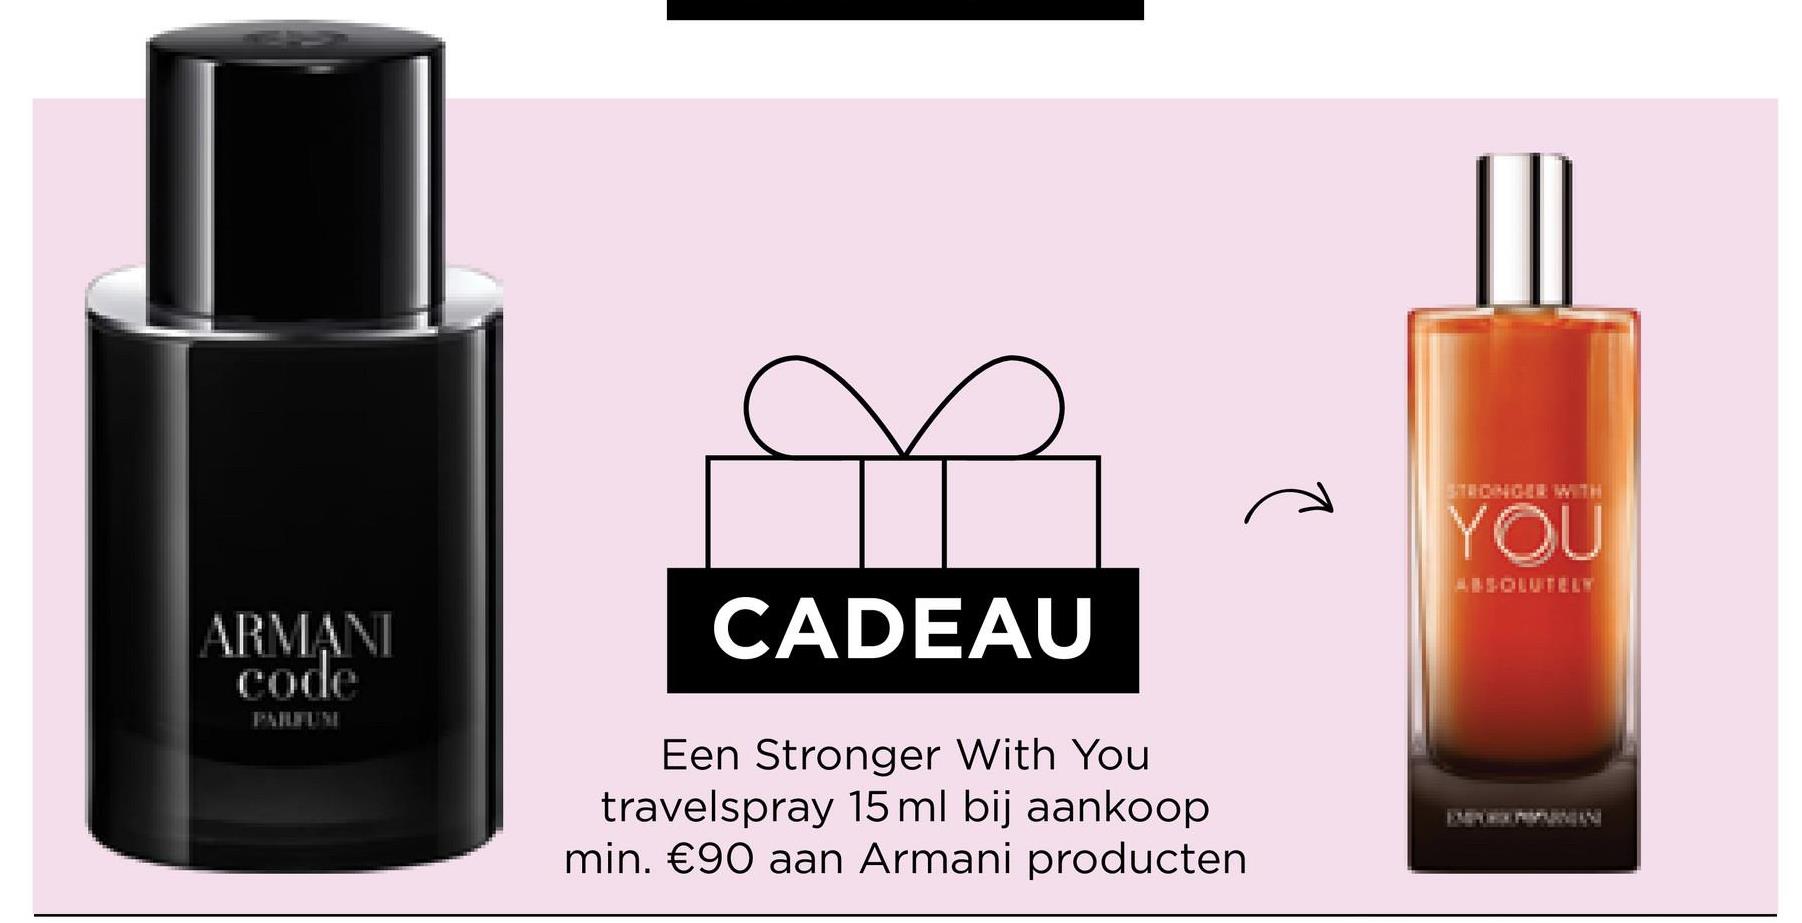 ARMANI
code
CADEAU
Een Stronger With You
travelspray 15 ml bij aankoop
min. €90 aan Armani producten
YOU
ABSOLUTELY